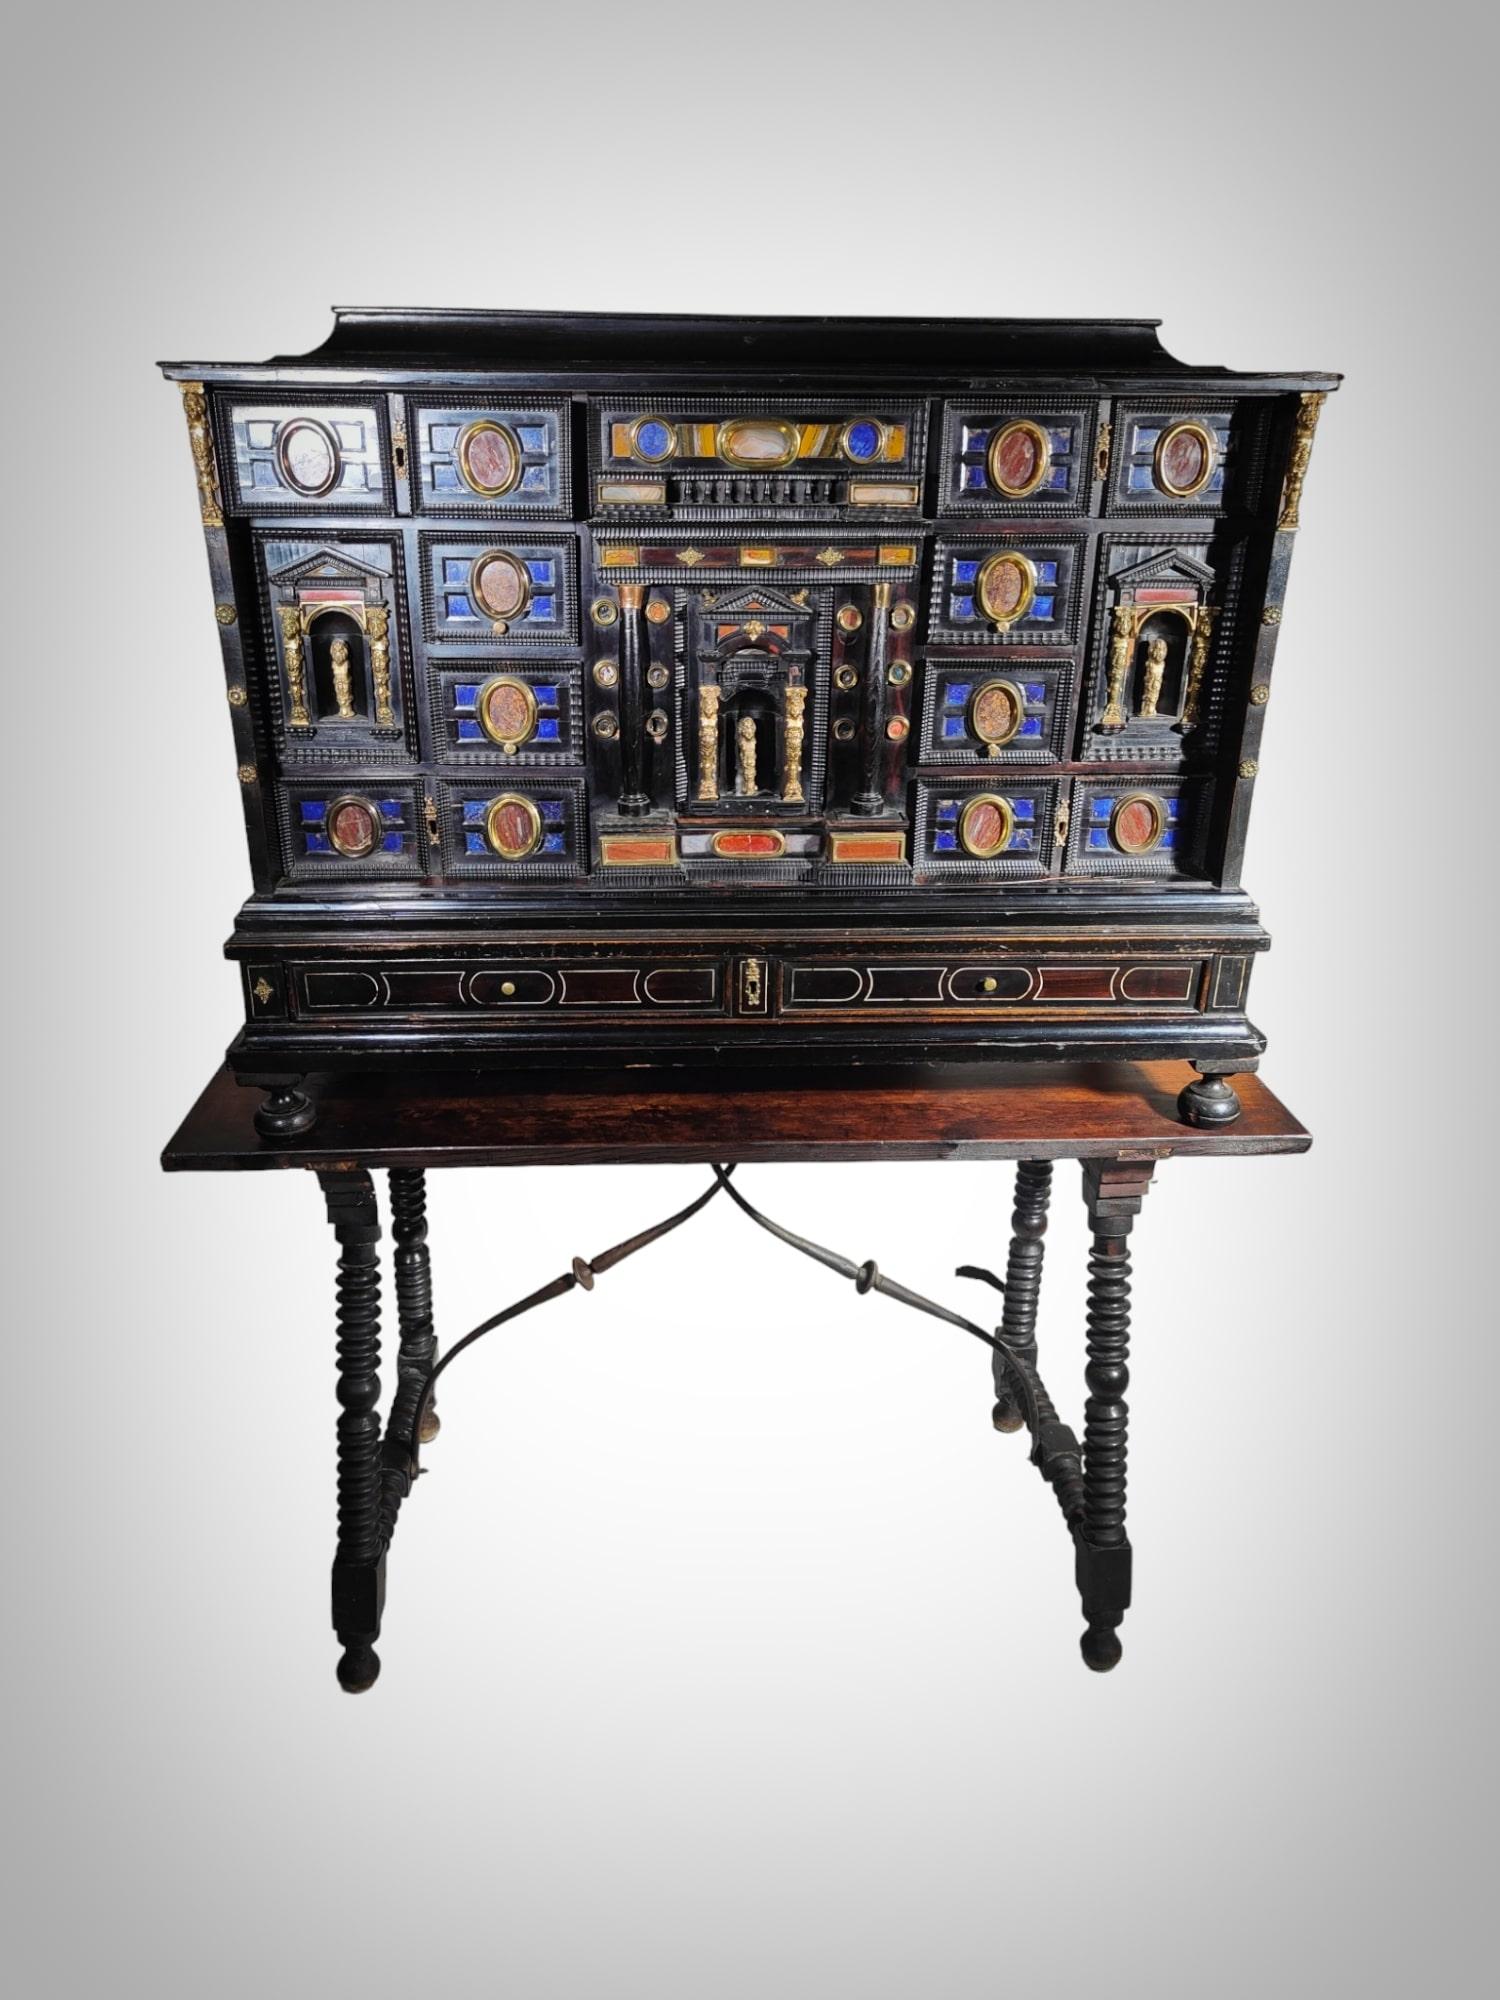 Tauchen Sie ein in die opulente Welt des italienischen Barocks mit diesem außergewöhnlichen Kabinett aus dem 17. Jahrhundert. Dieser mit unvergleichlicher Kunstfertigkeit gefertigte Schrank aus Ebenholz und Ebenholz rühmt sich eines